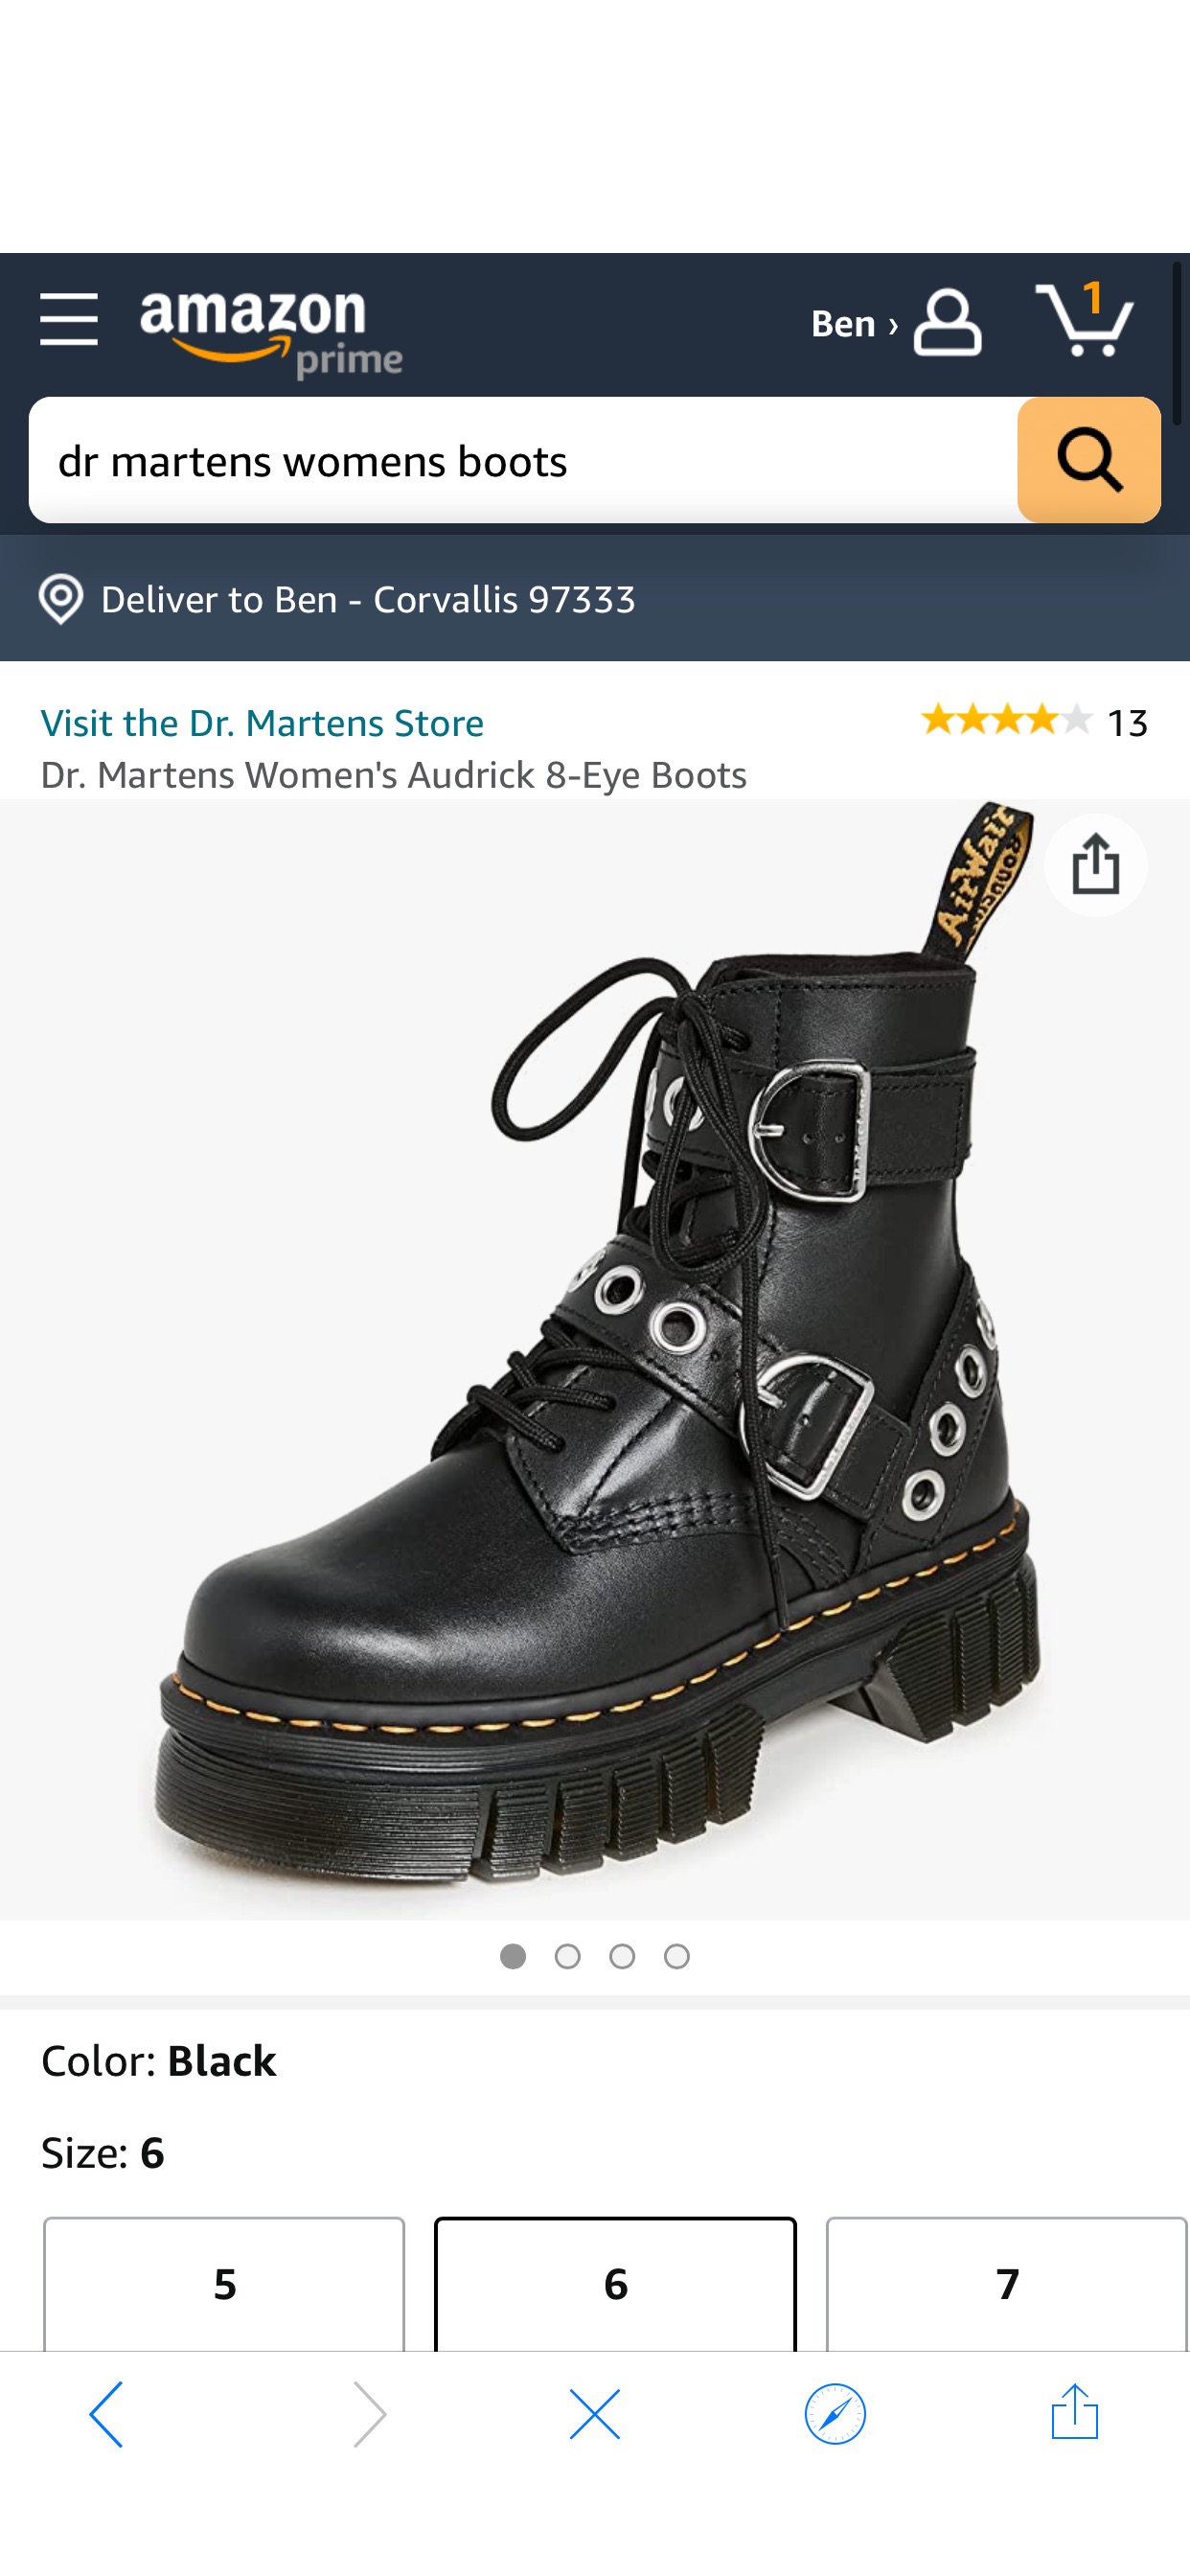 Amazon.com | Dr. Martens Women's Audrick 8-Eye Boots, Black, 6 Medium US | Ankle & Bootie